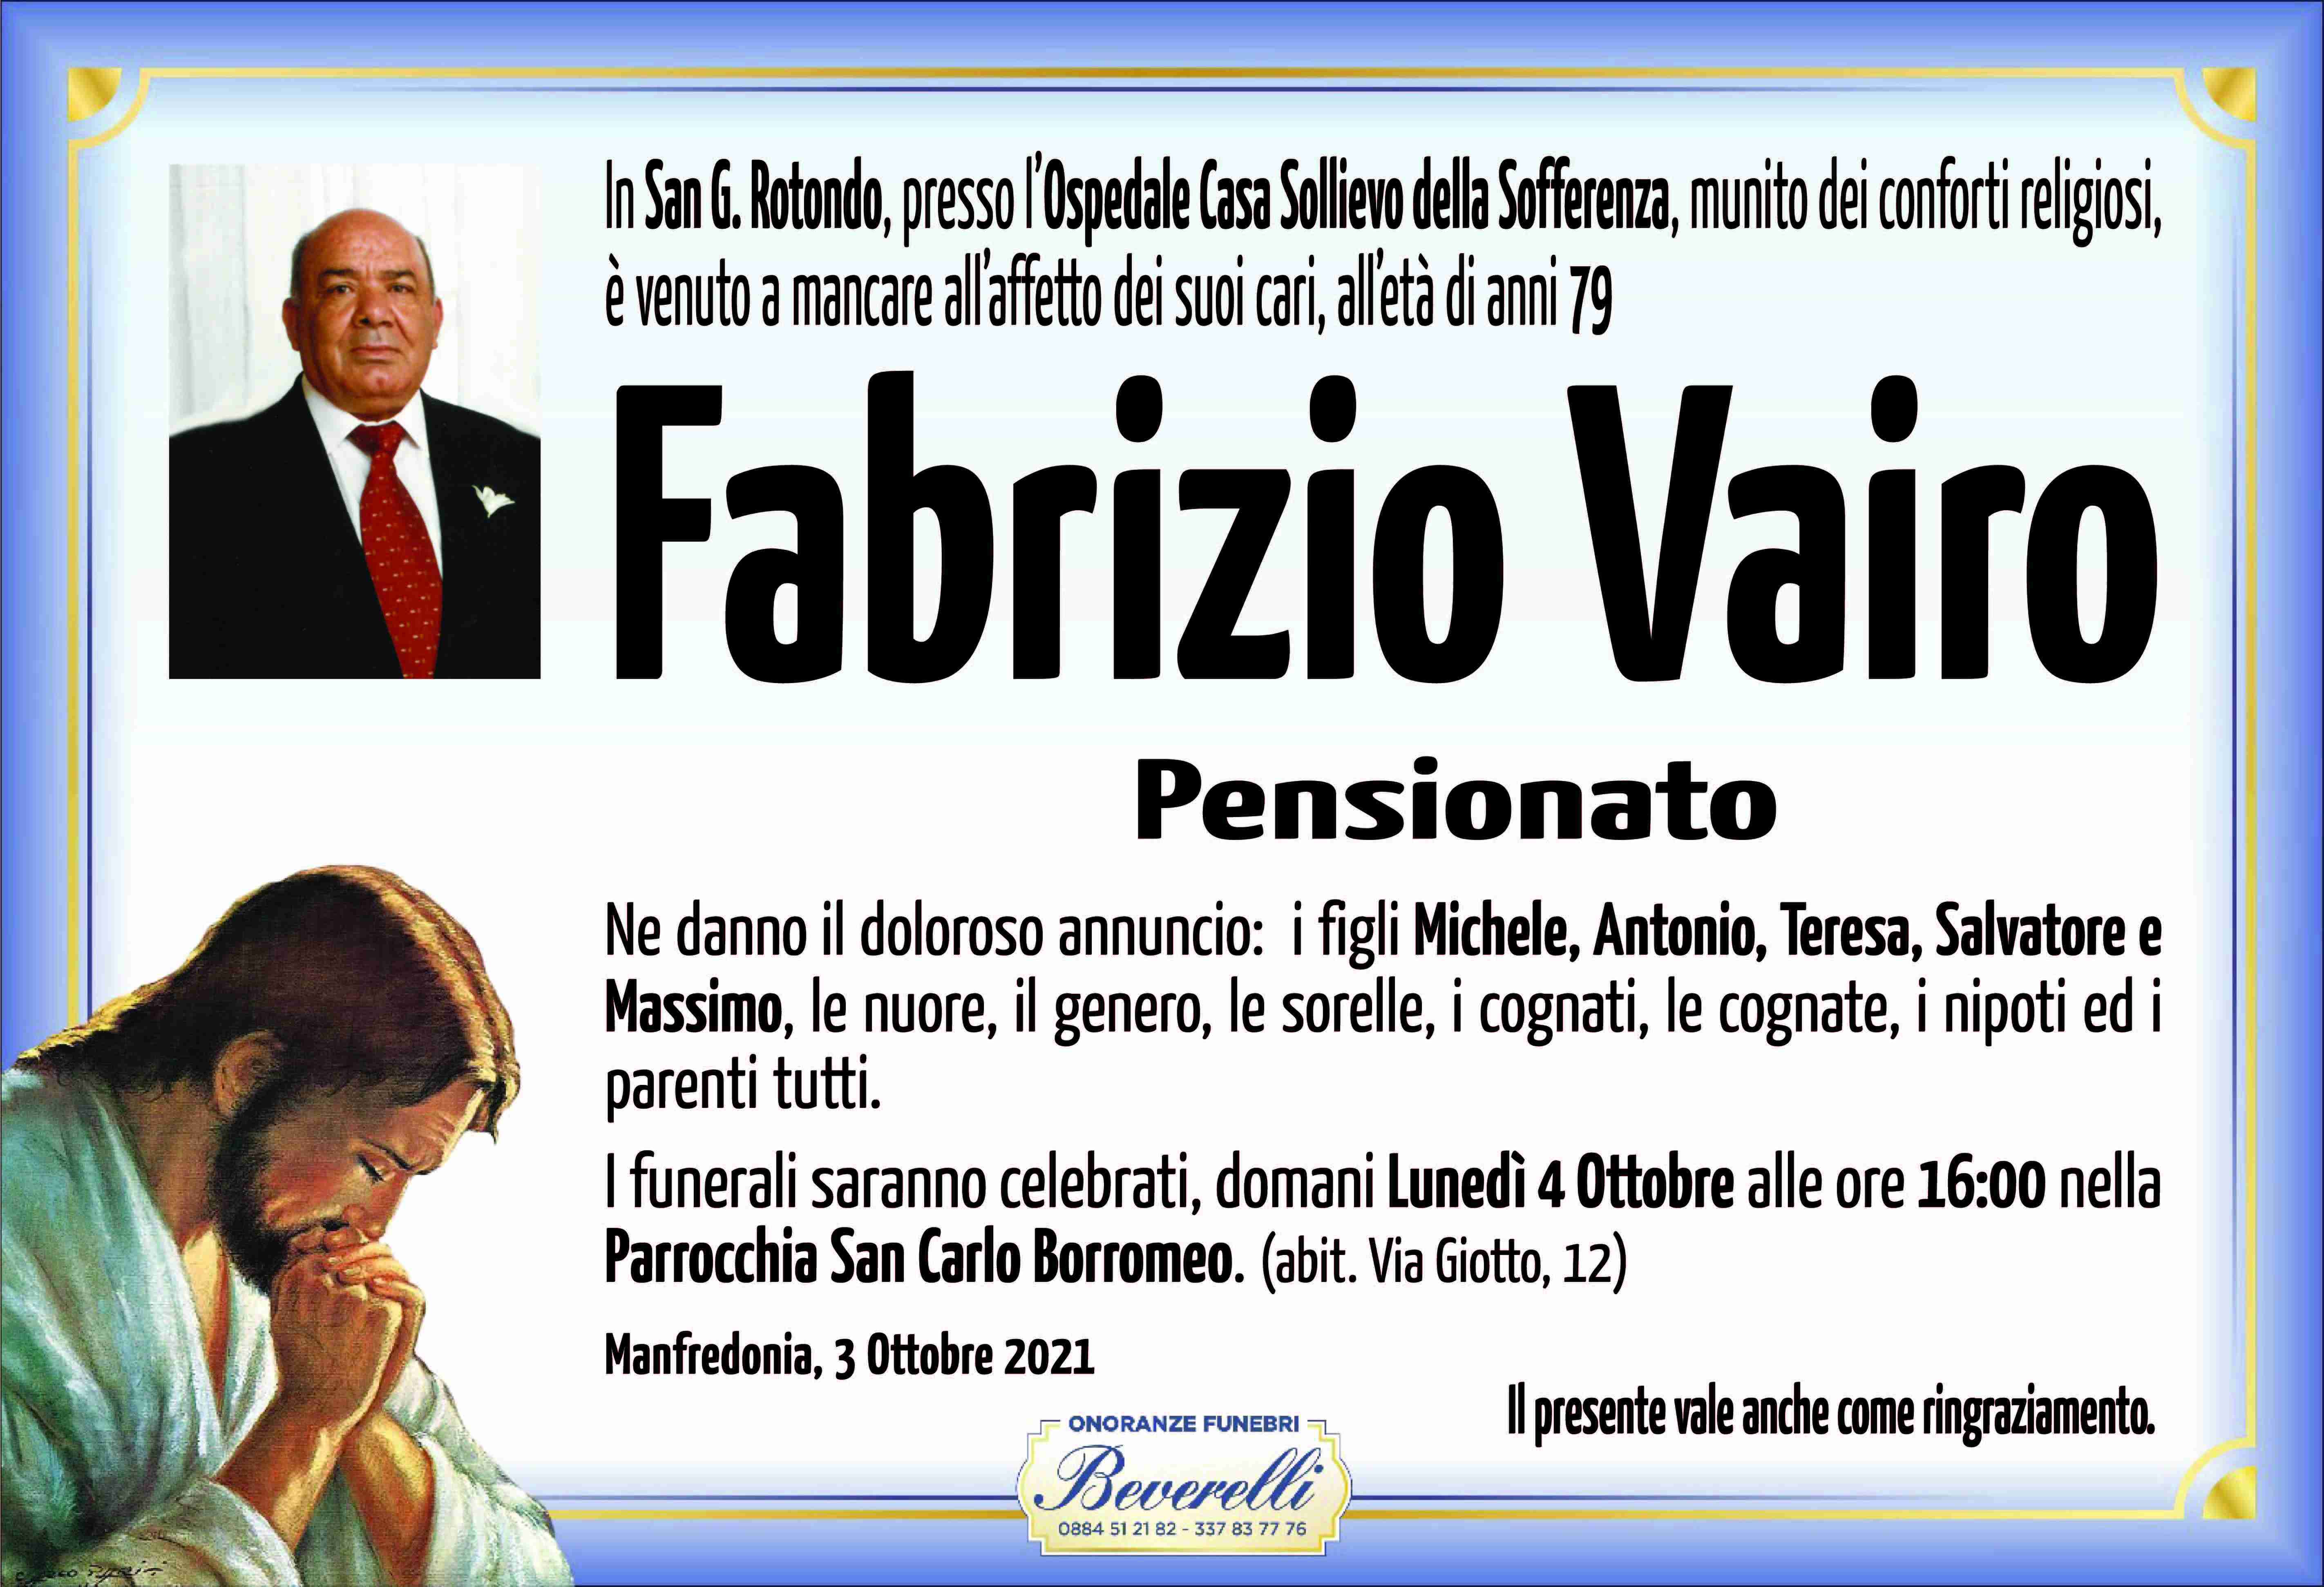 Fabrizio Vairo